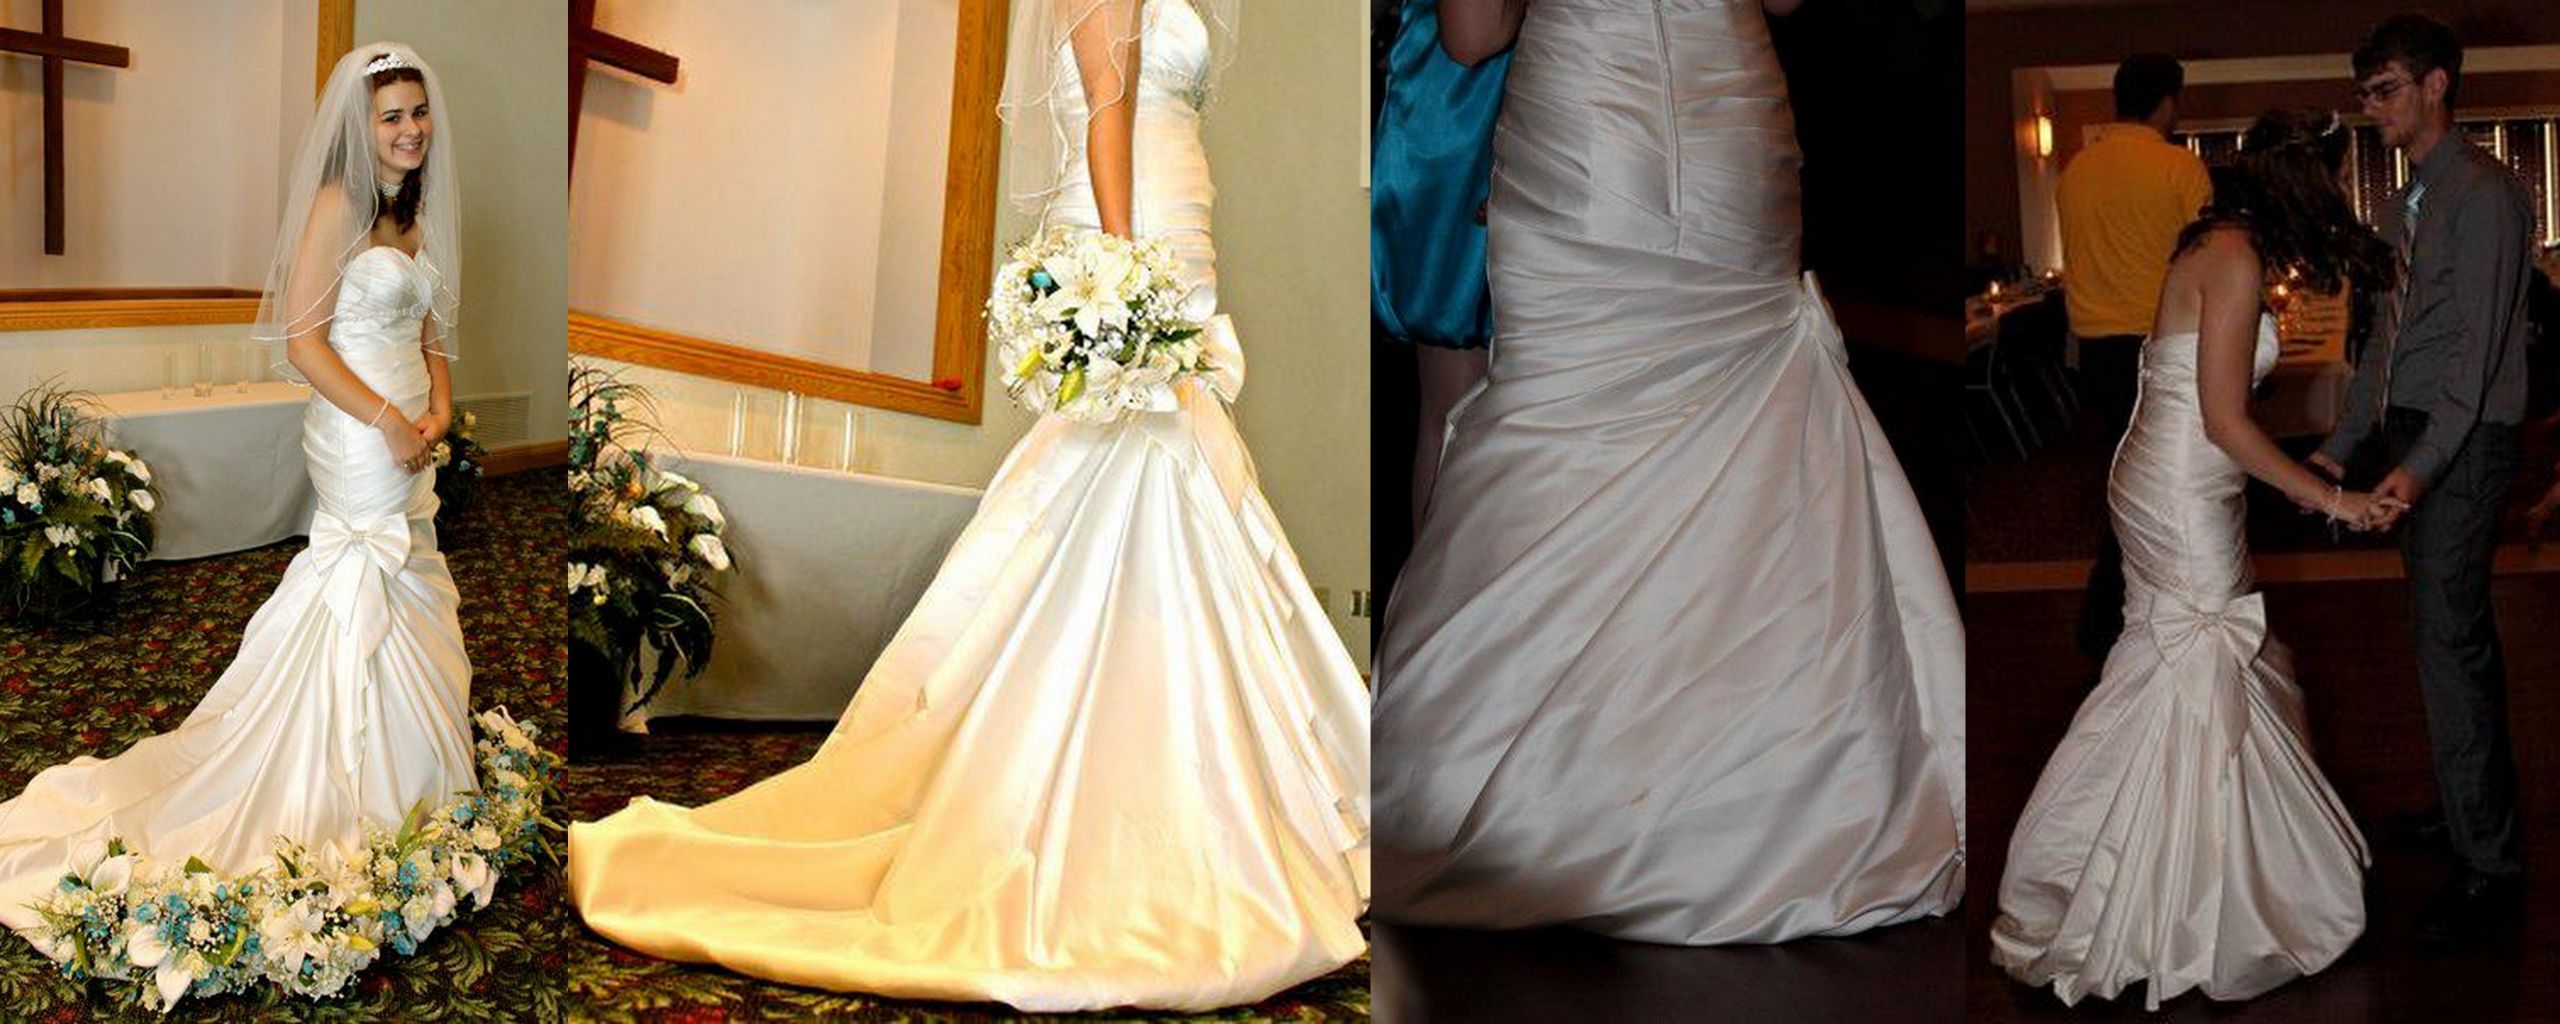 DIY Wedding Dress Bustle
 DIY wedding dress bustle